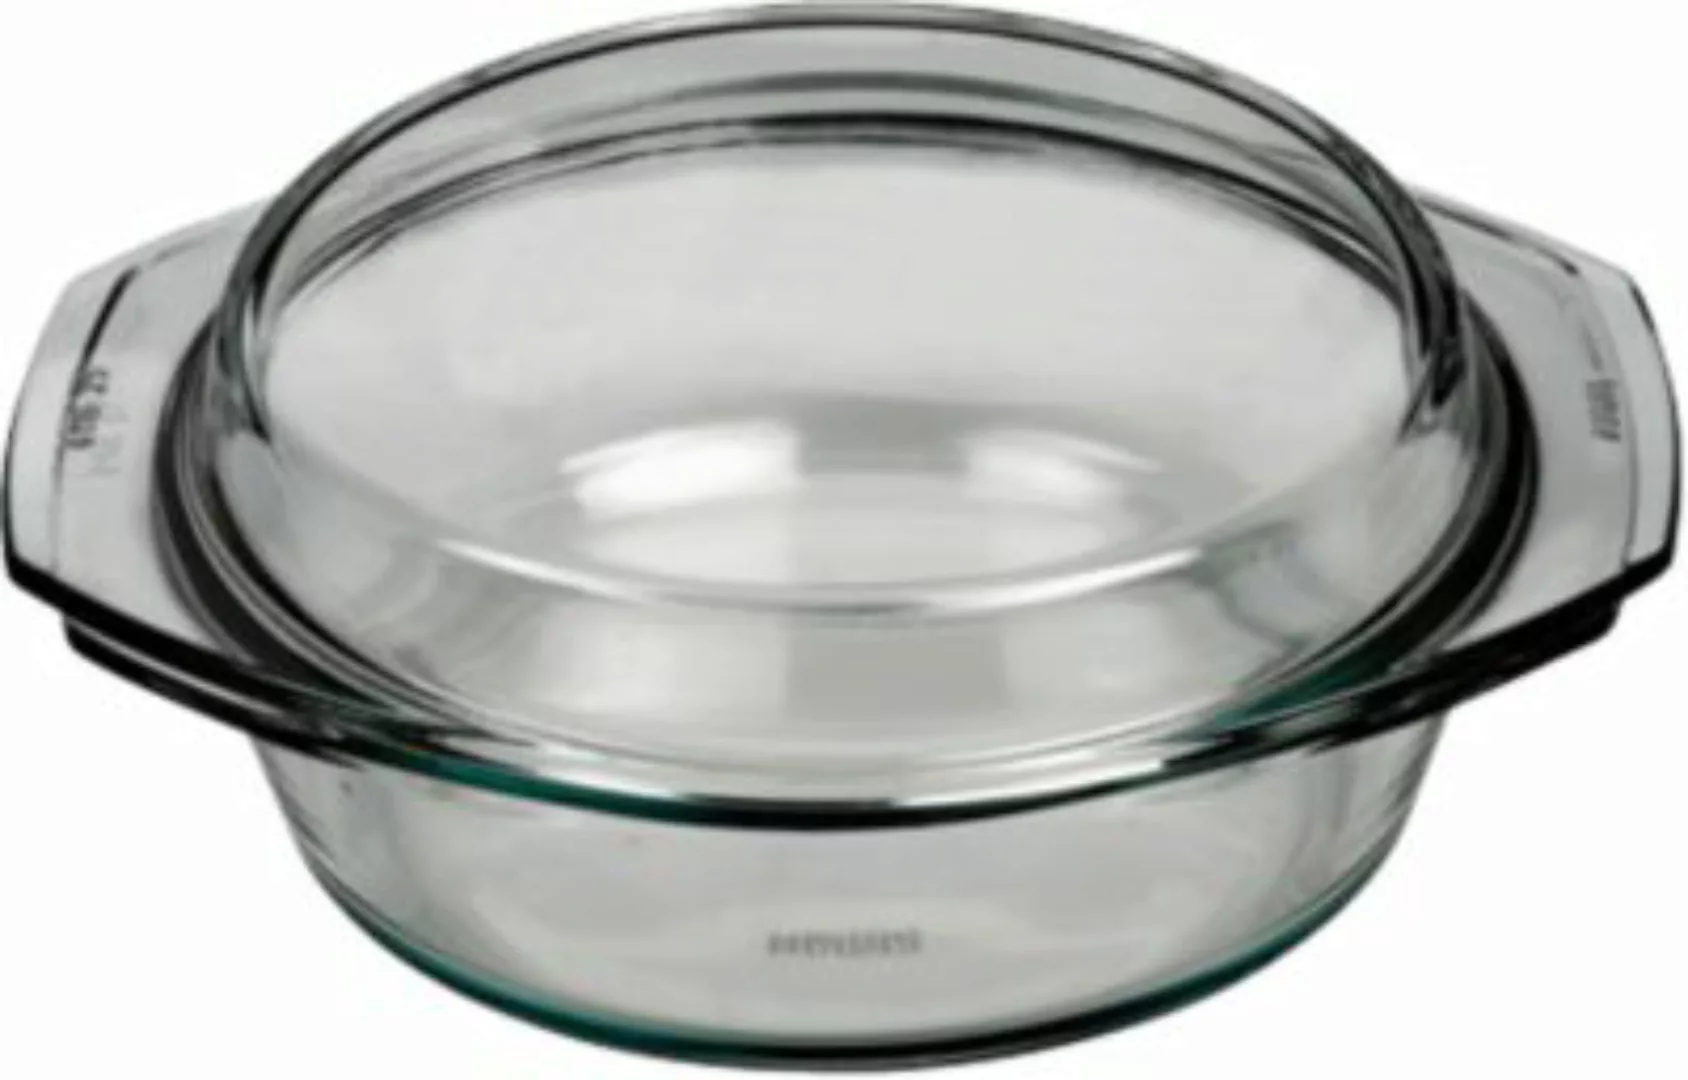 BOHEMIA Selection feuerfeste Glas Schüssel mit Deckel, bis 300°C, 2l farblo günstig online kaufen